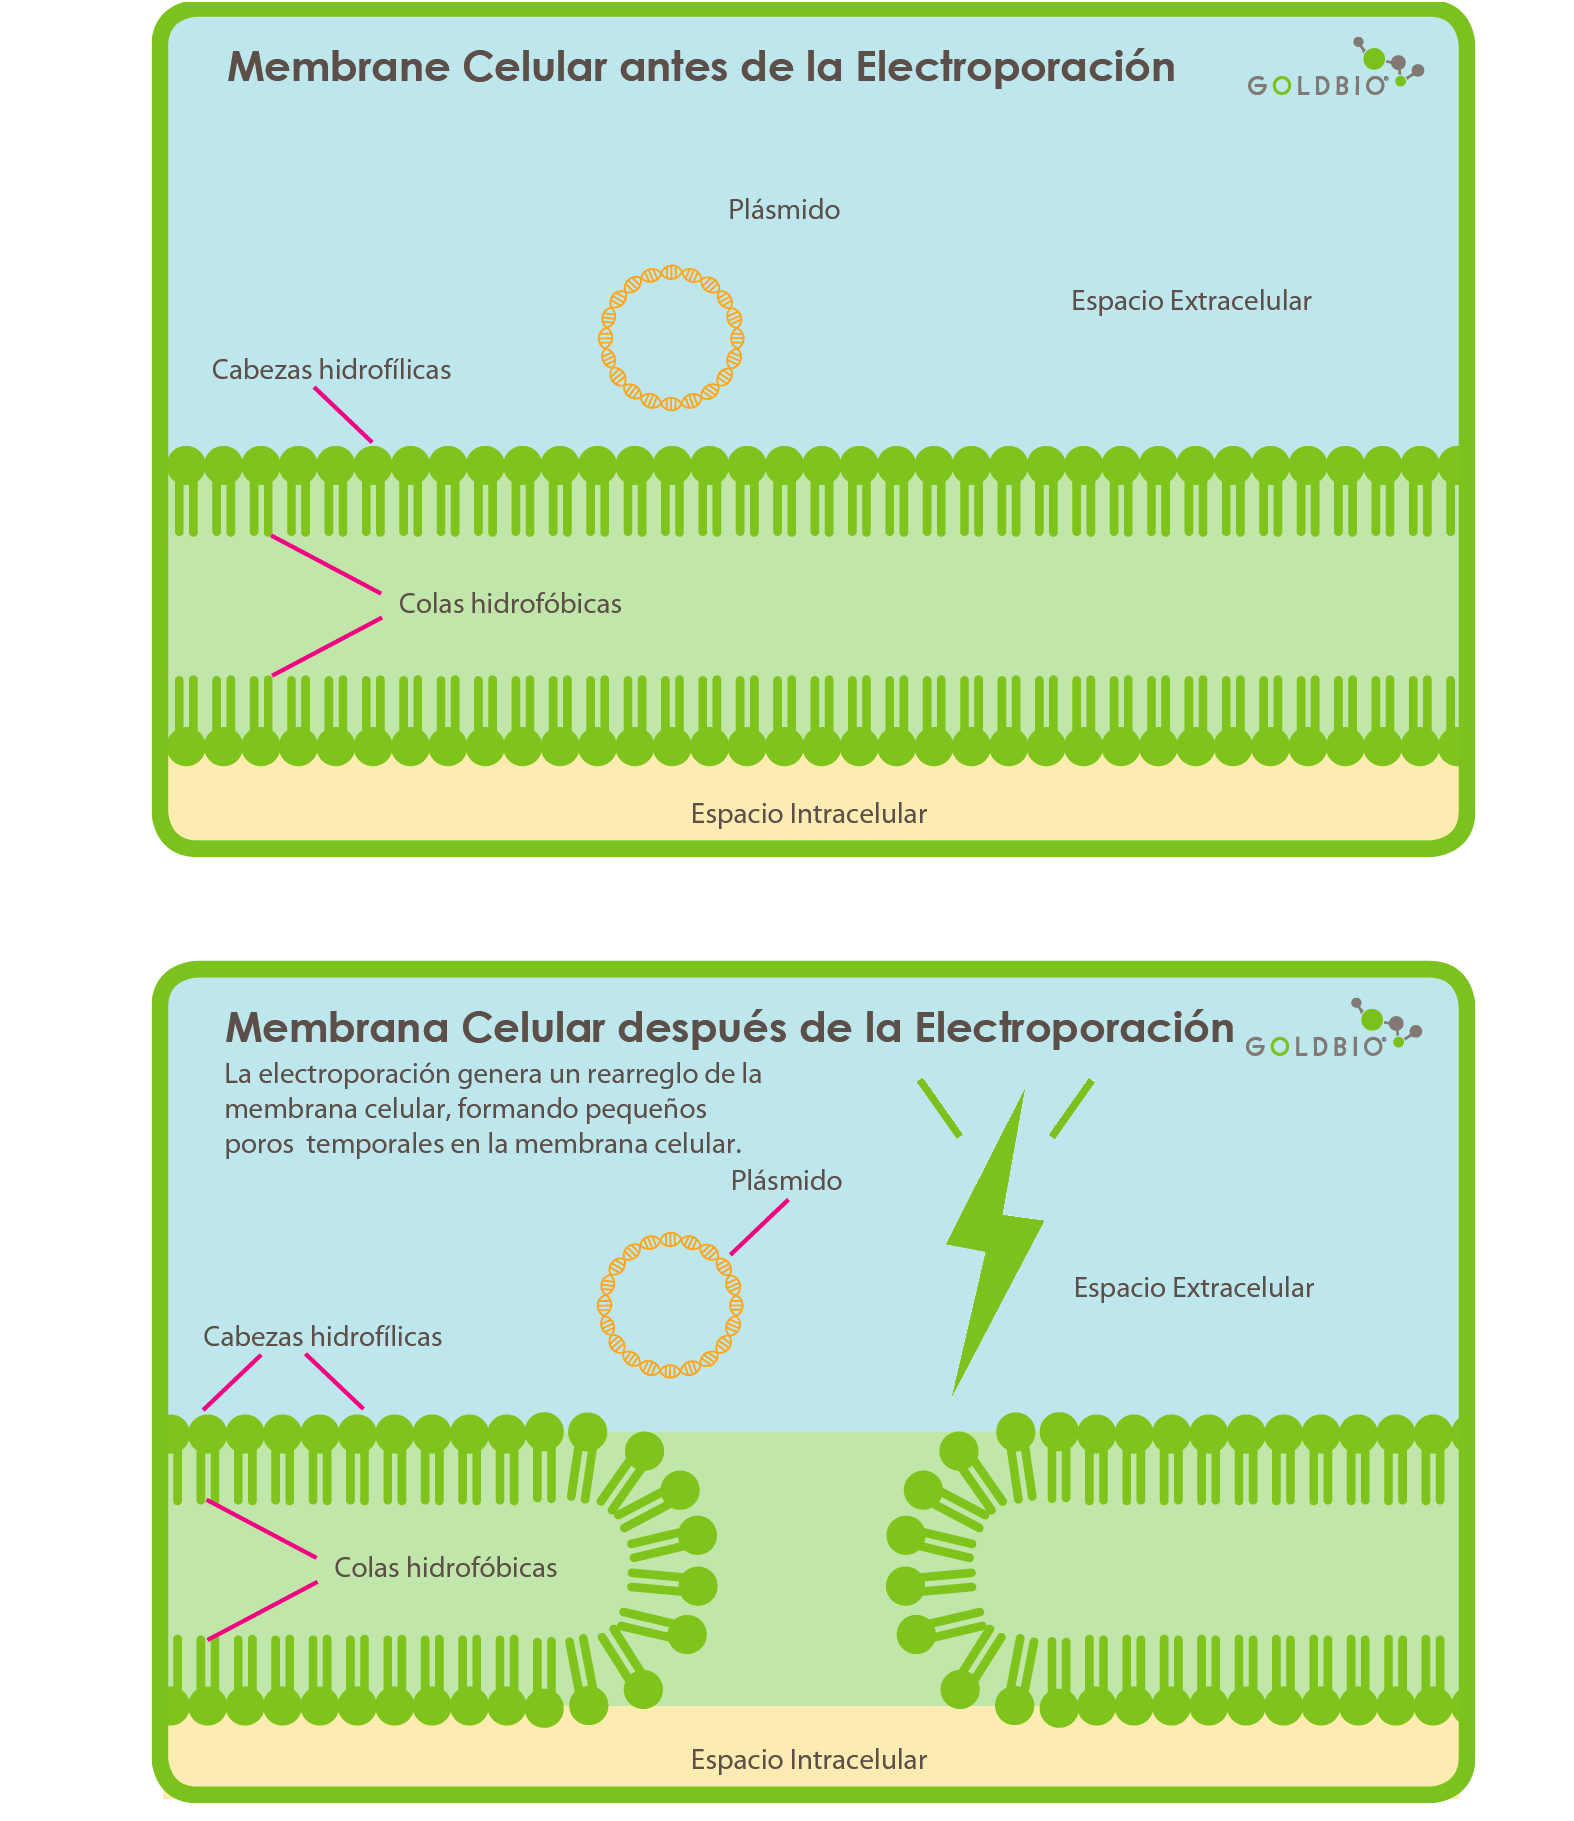 membrane celular antes de la electroporacion y membrana celular despues de la electroporacion ilustracion